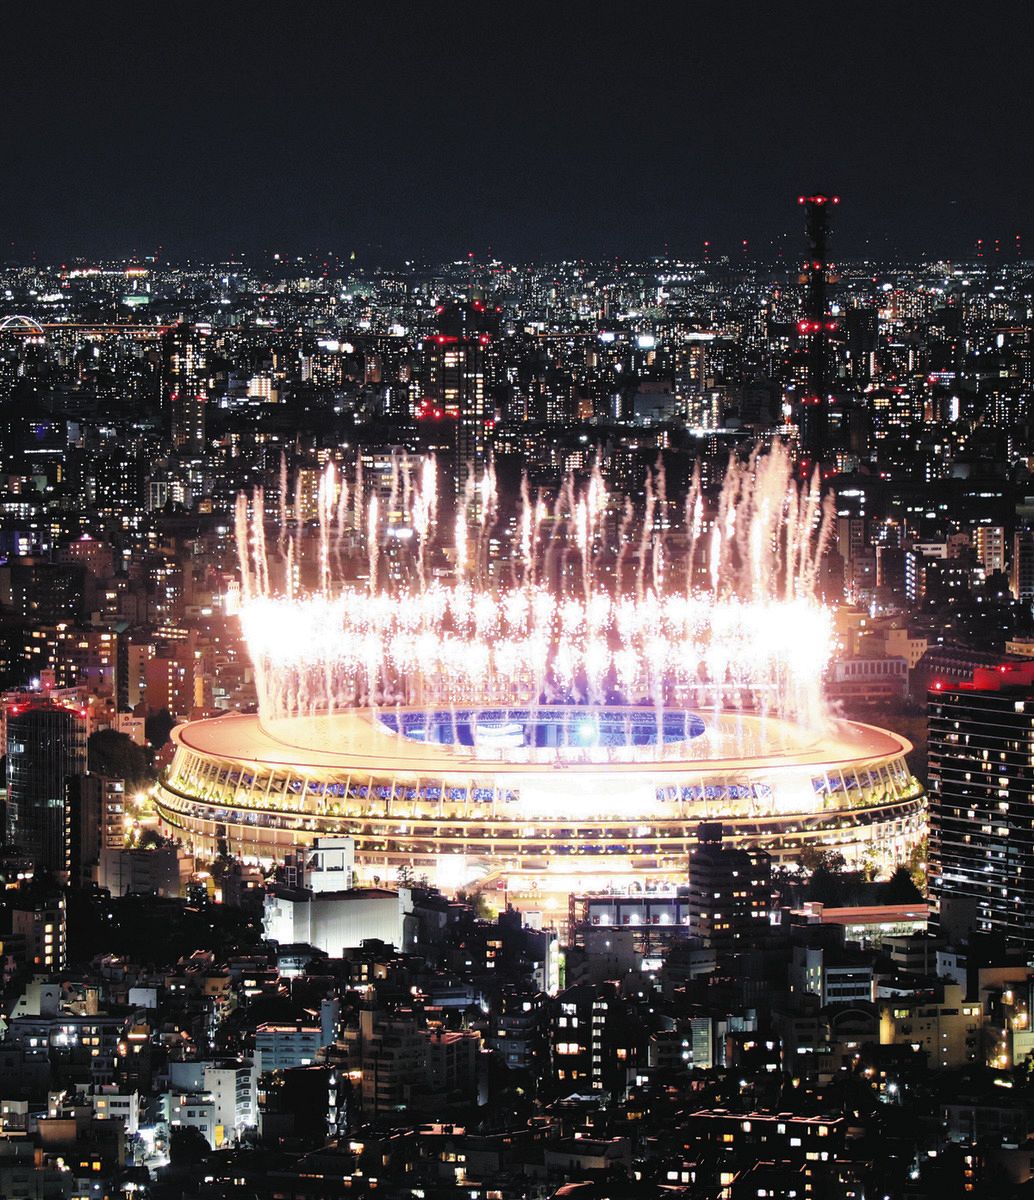 2021年8月、東京五輪の閉会式で国立競技場から打ち上げられた花火＝東京都渋谷区の展望施設「渋谷スカイ」から